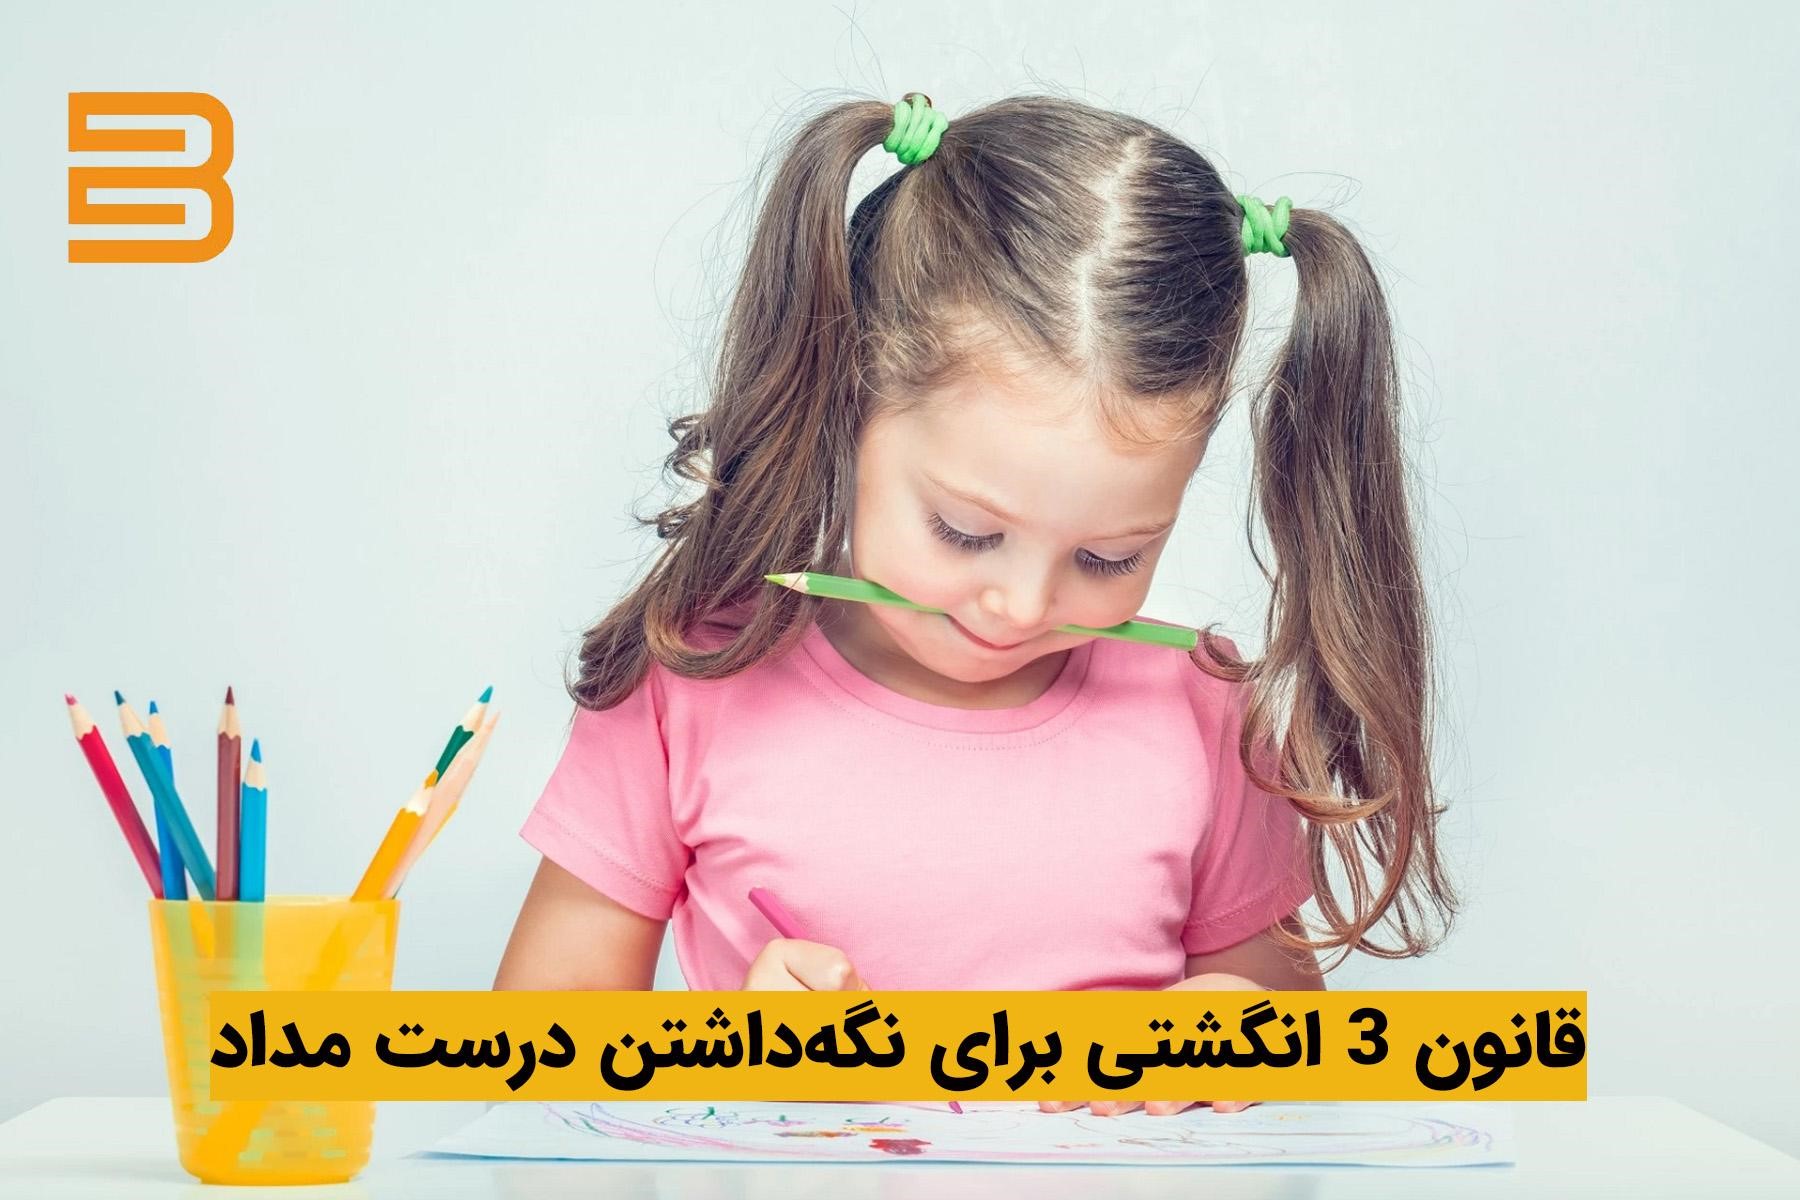 آموزش مداد دست گرفتن به کودک با ابزارهای ارگونومیک